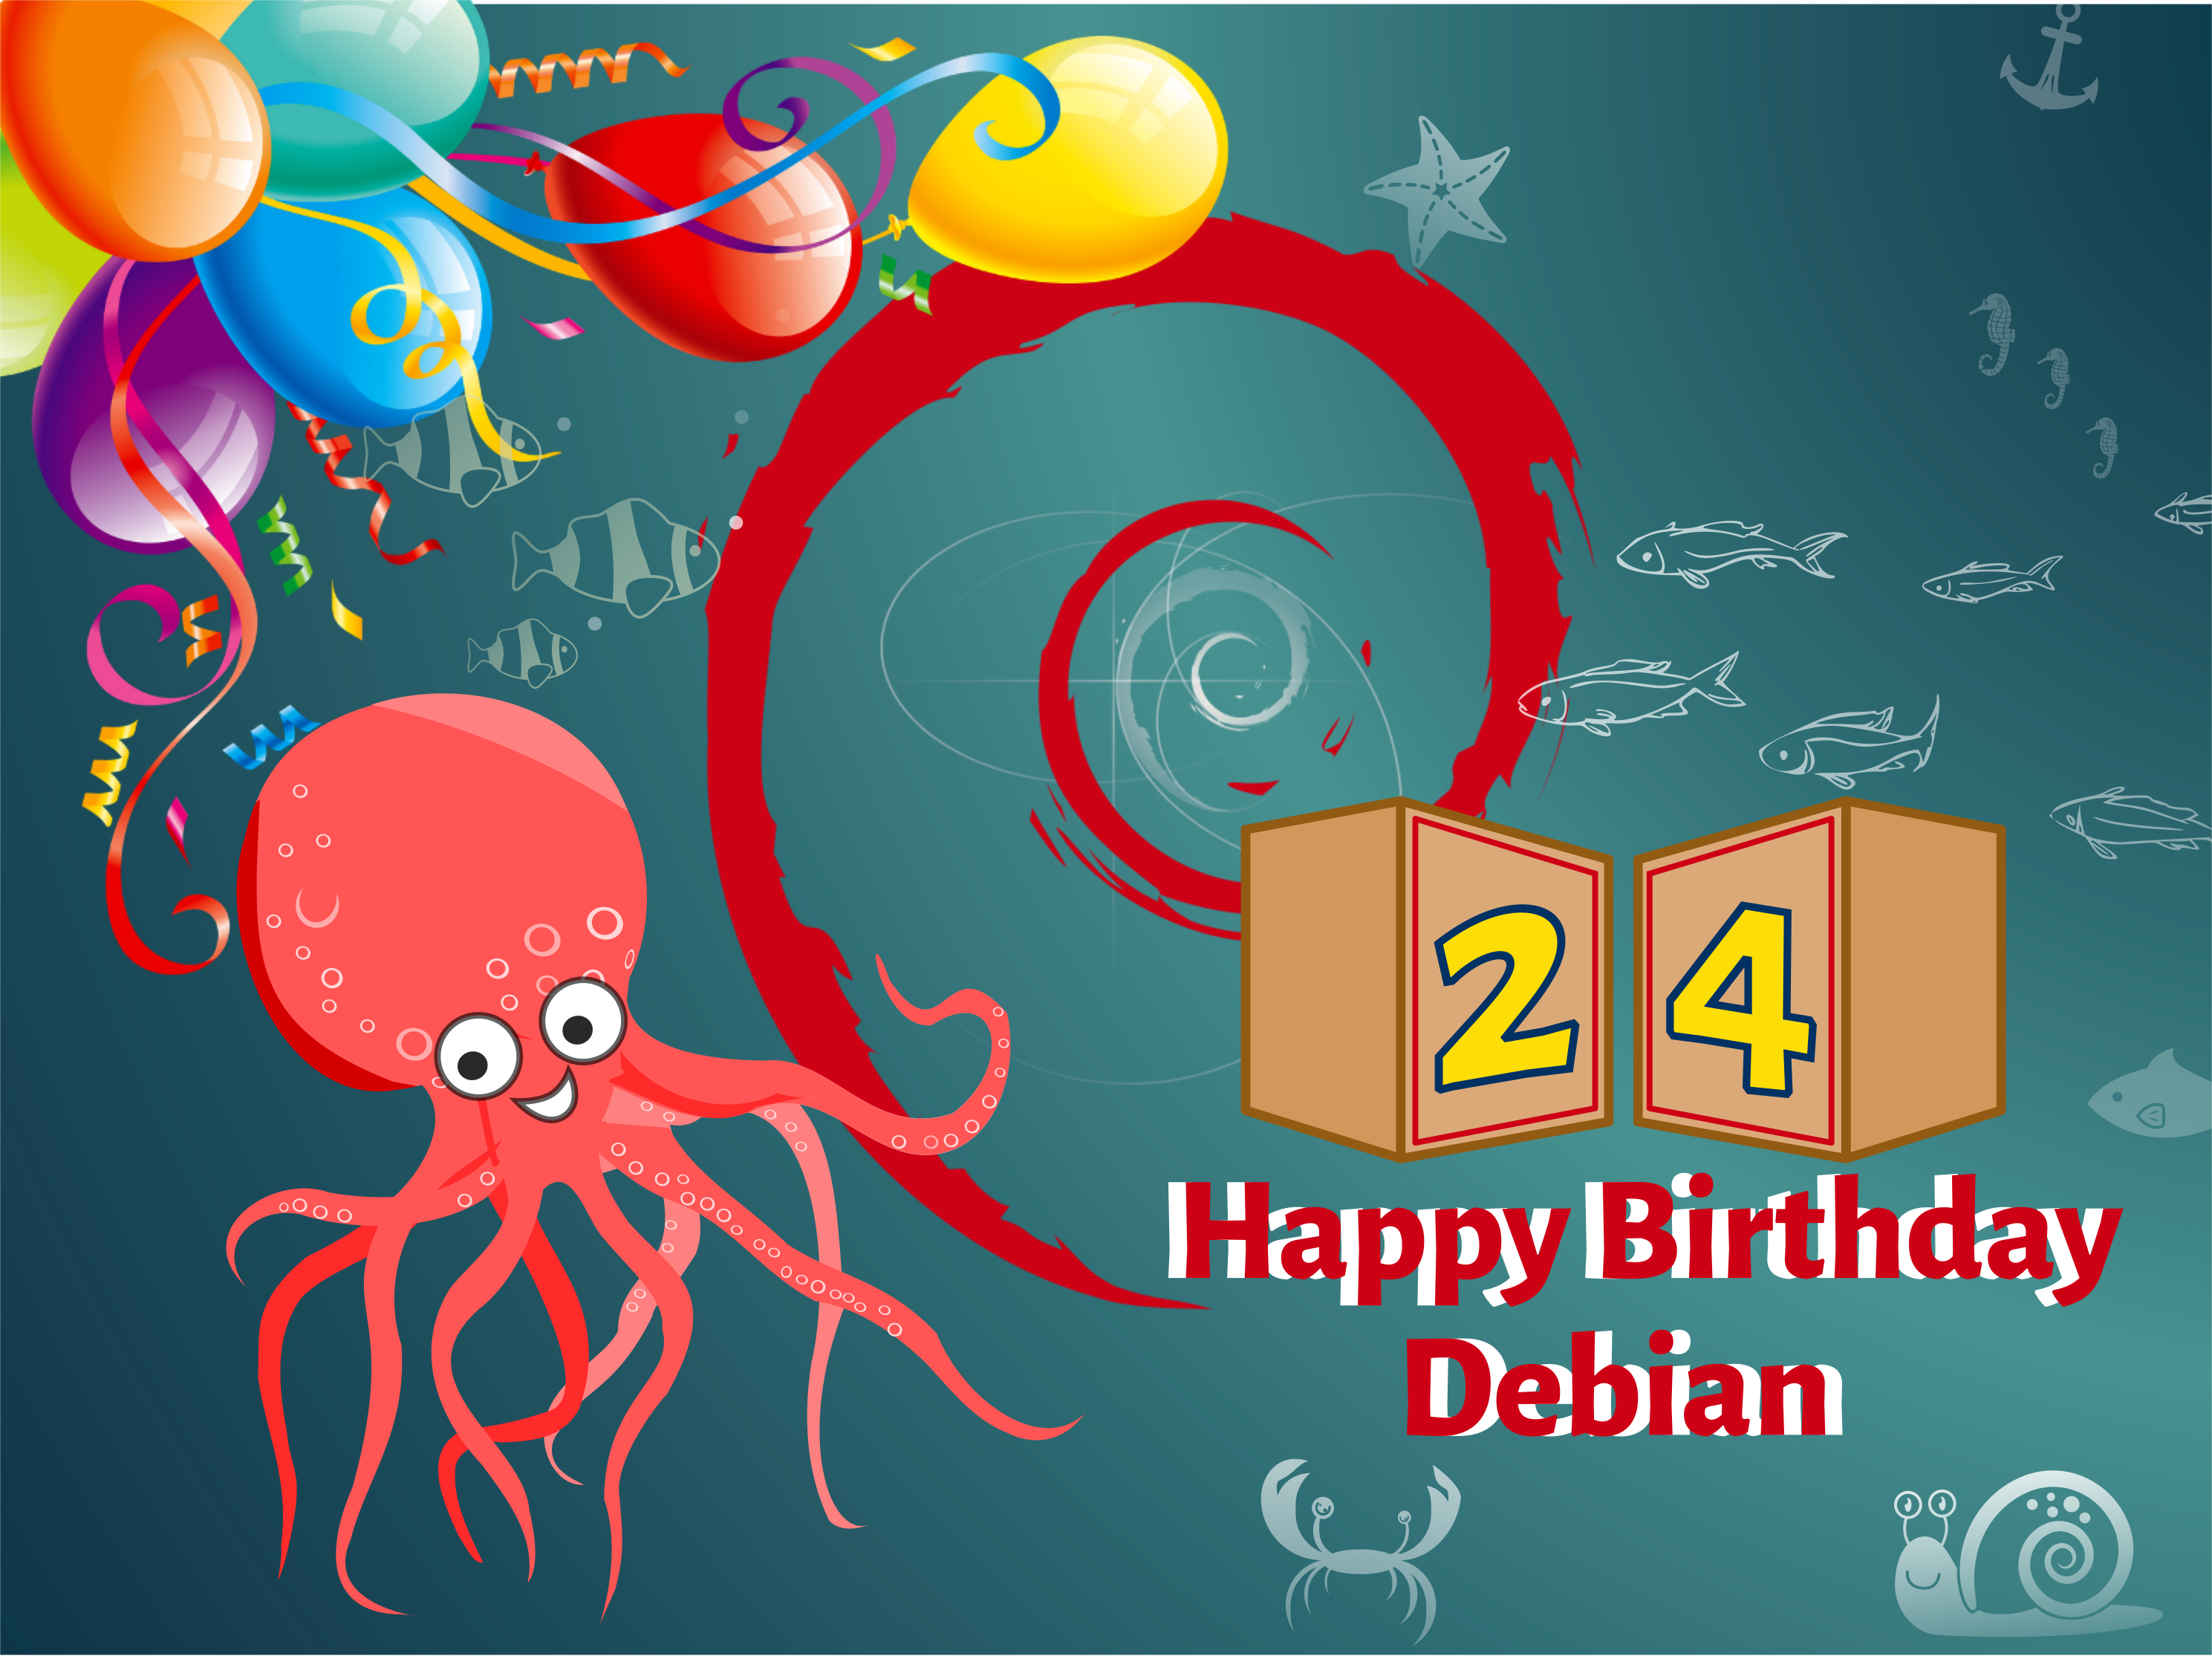 Debian turns 24